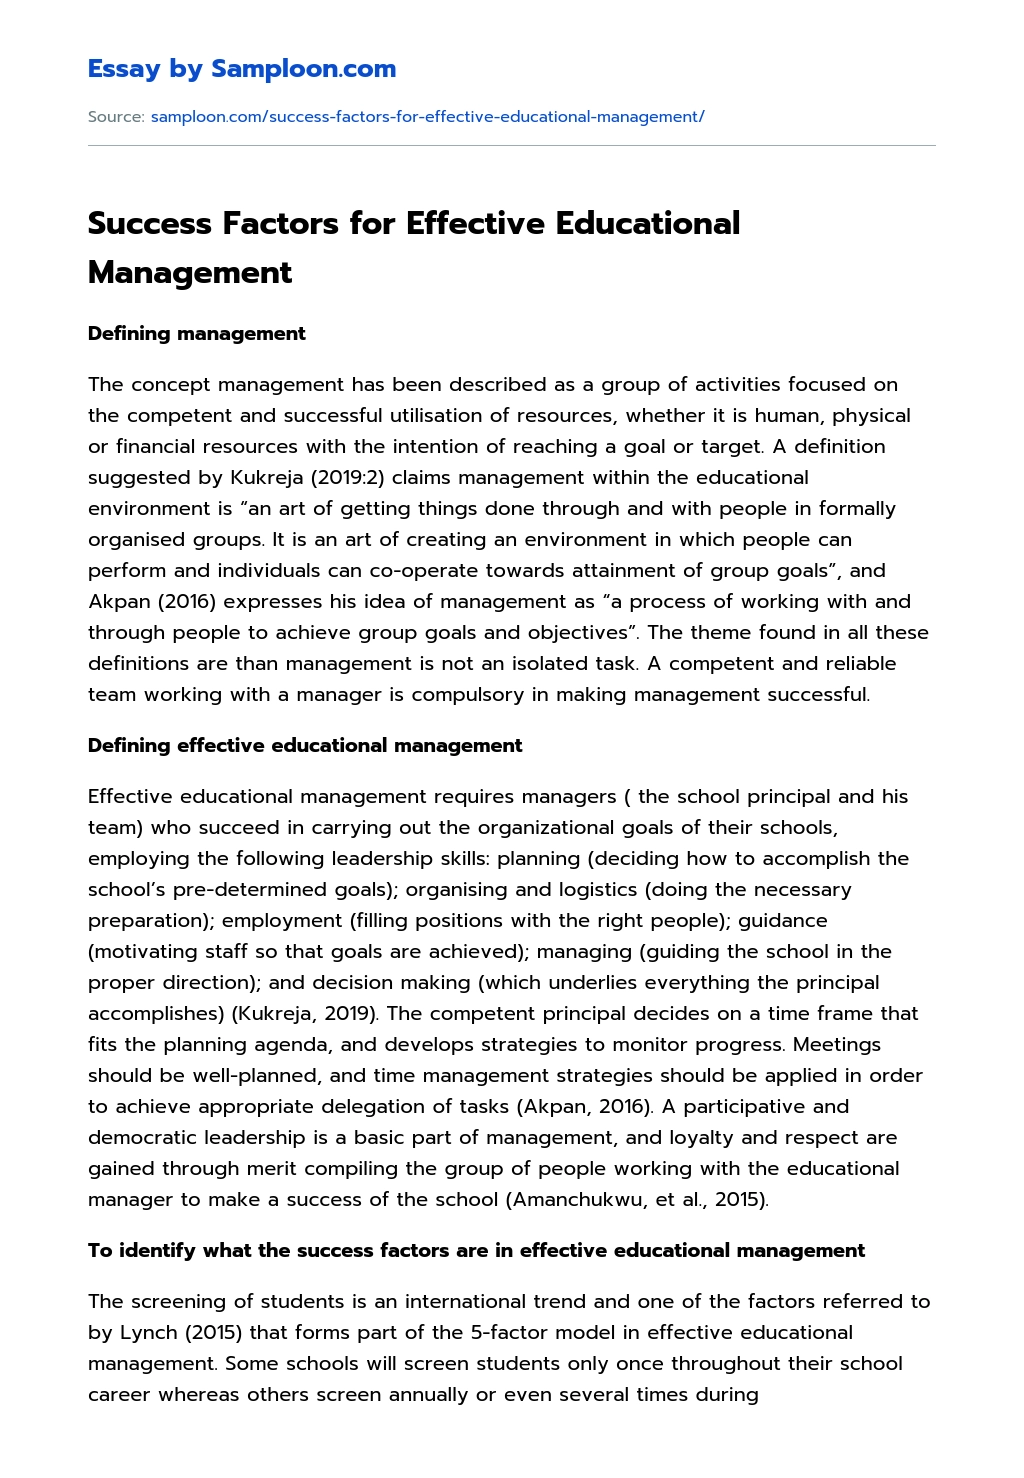 Success Factors for Effective Educational Management essay